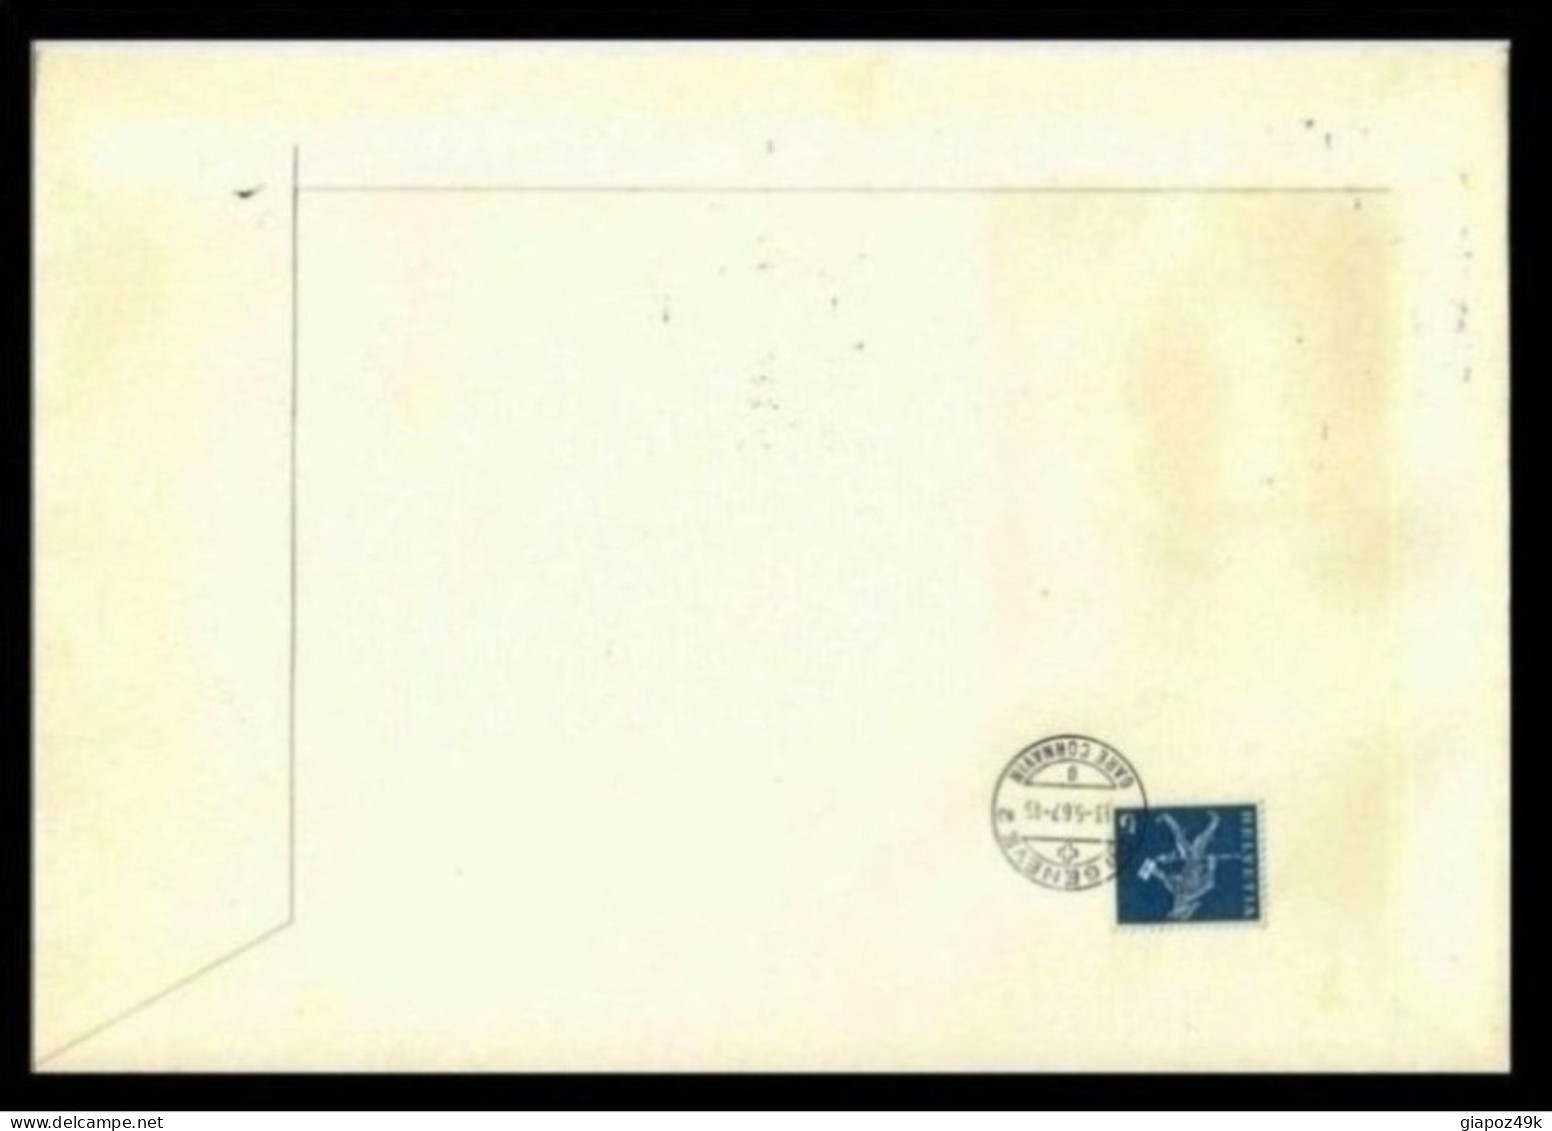 ● OLANDA 1967 ֍ Amphilex ֍ Busta Viaggiata Con Minifoglio ● Amsterdam / Geneve ● RARO ● Lotto XX ● - Briefe U. Dokumente